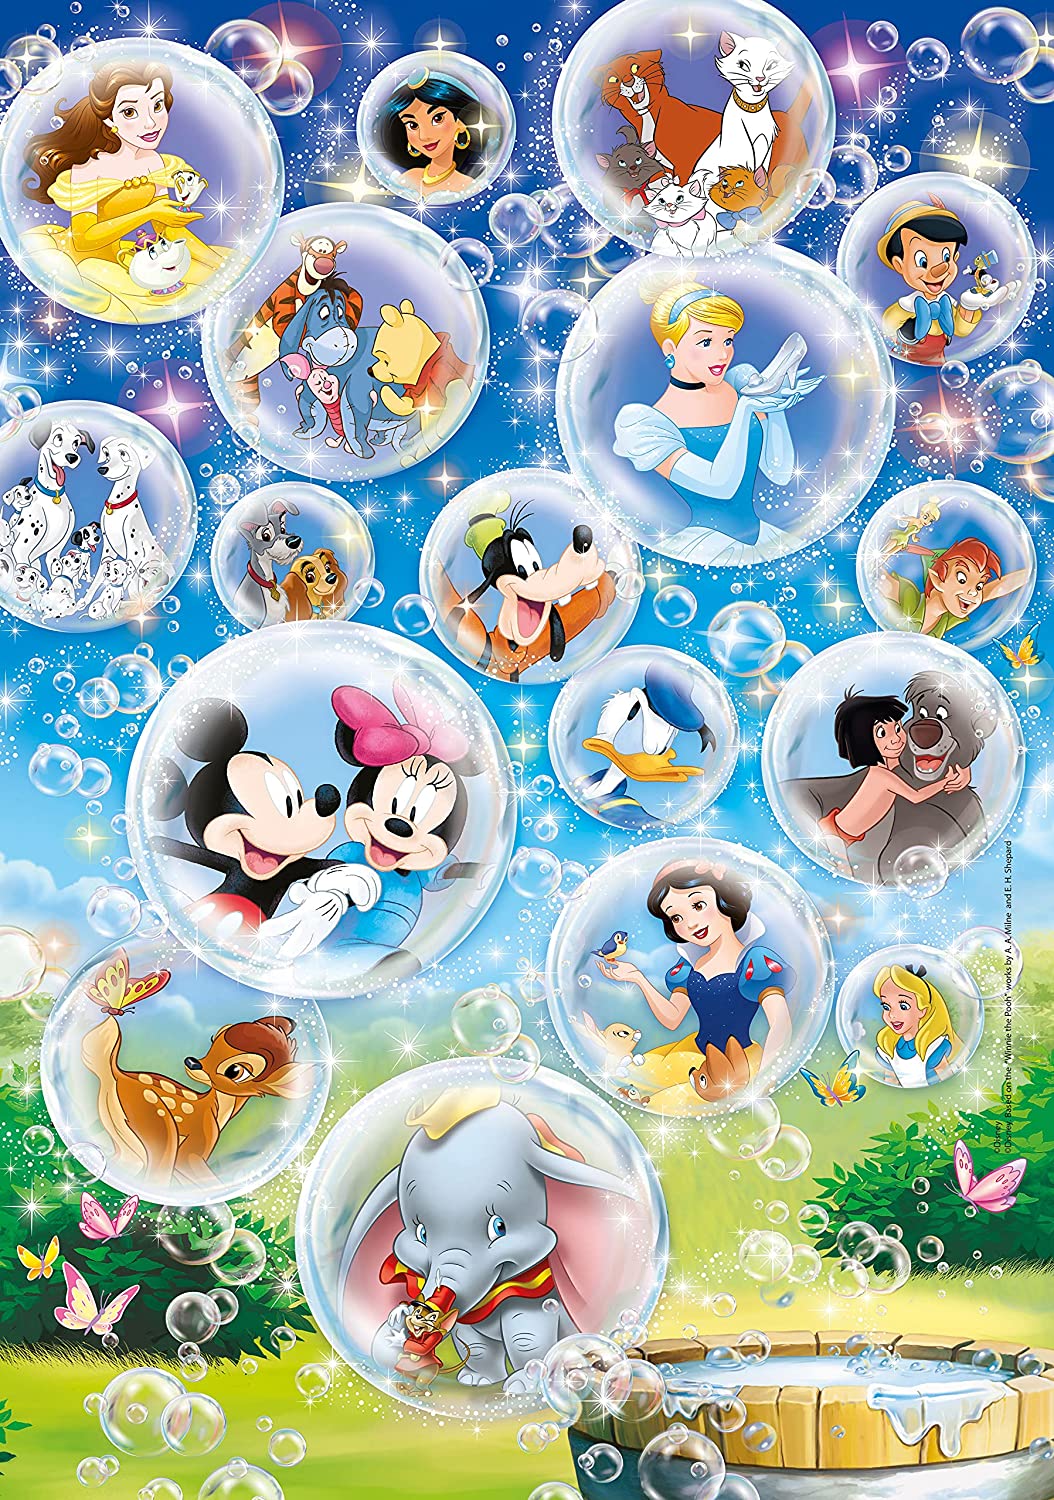 Clementoni - 26049 - Supercolor Puzzle for Children - Disney Classic - 60 Pieces